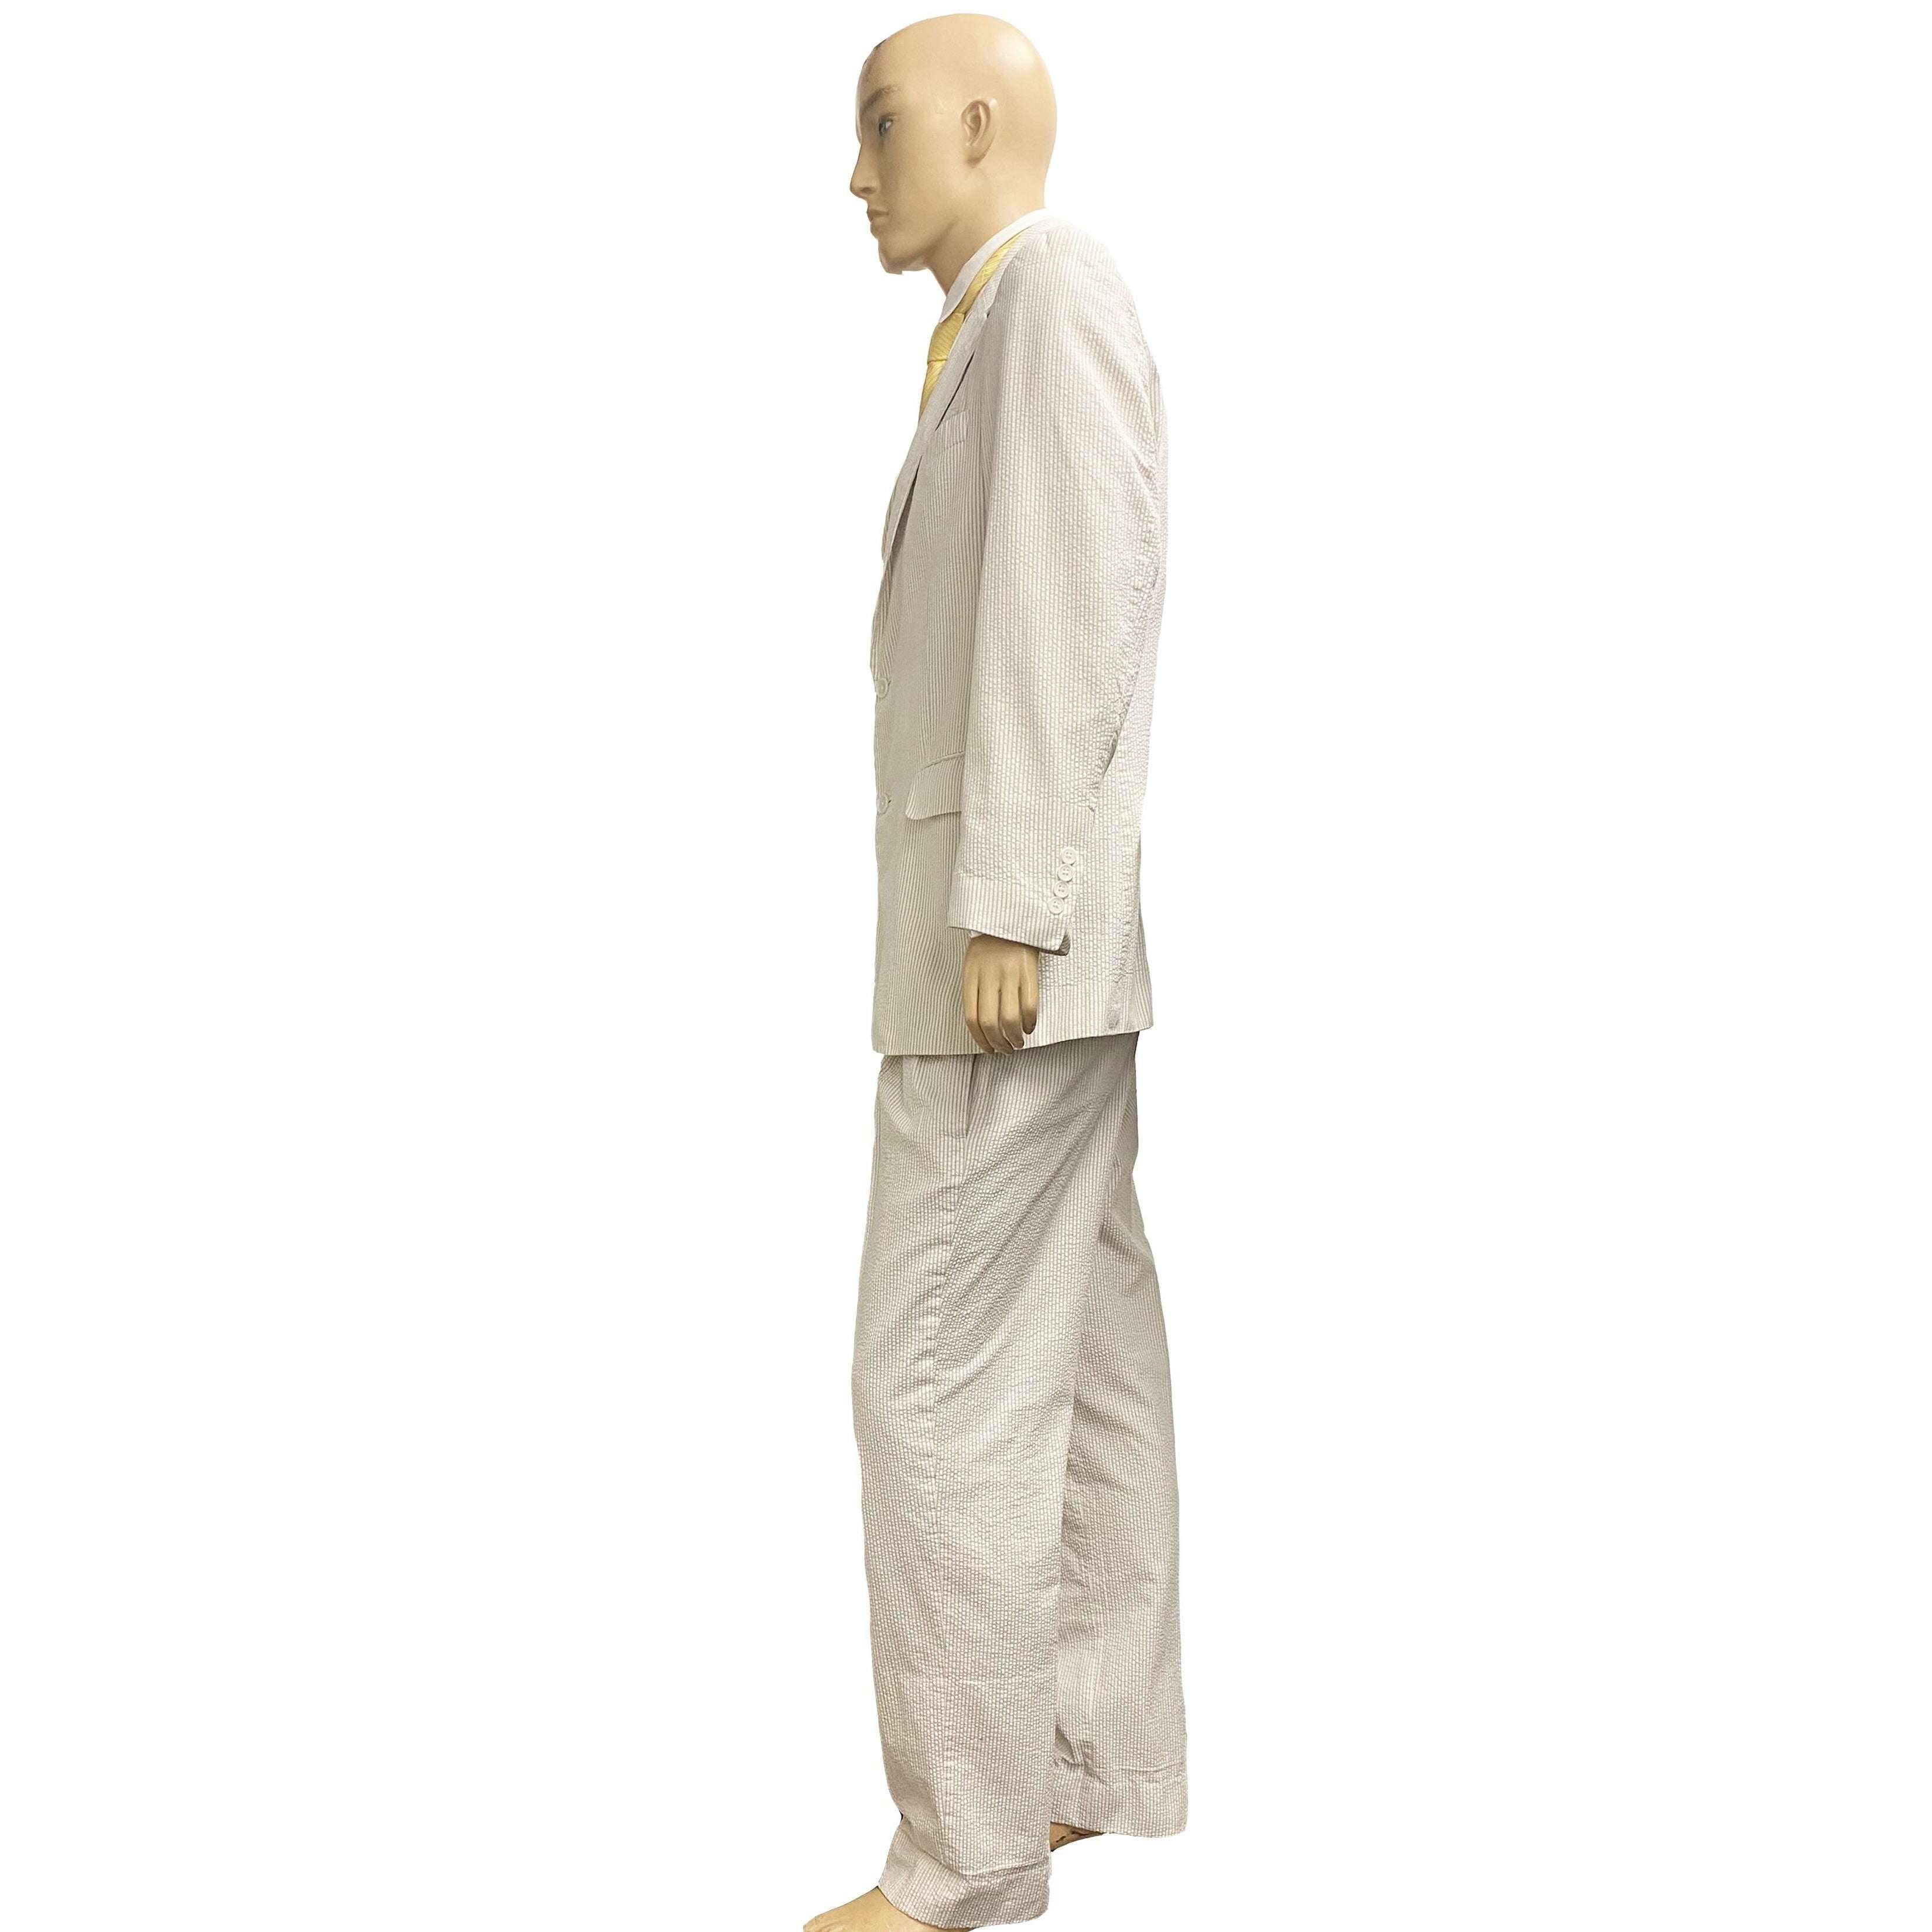 Exclusive 1920s Cream Seersucker Suit Adult Costume